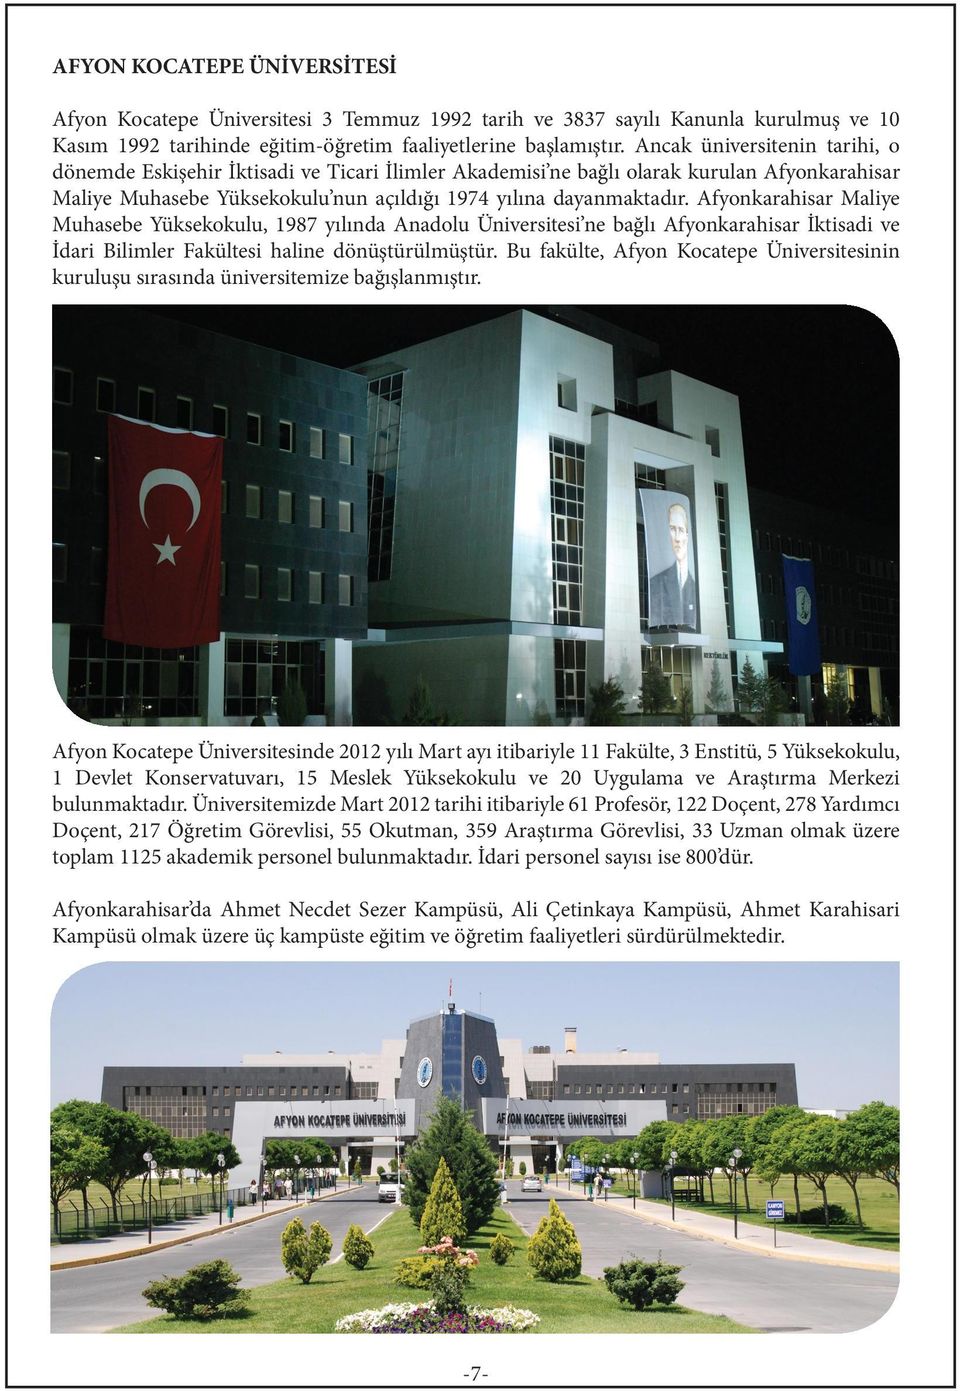 Afyonkarahisar Maliye Muhasebe Yüksekokulu, 1987 yılında Anadolu Üniversitesi ne bağlı Afyonkarahisar İktisadi ve İdari Bilimler Fakültesi haline dönüştürülmüştür.